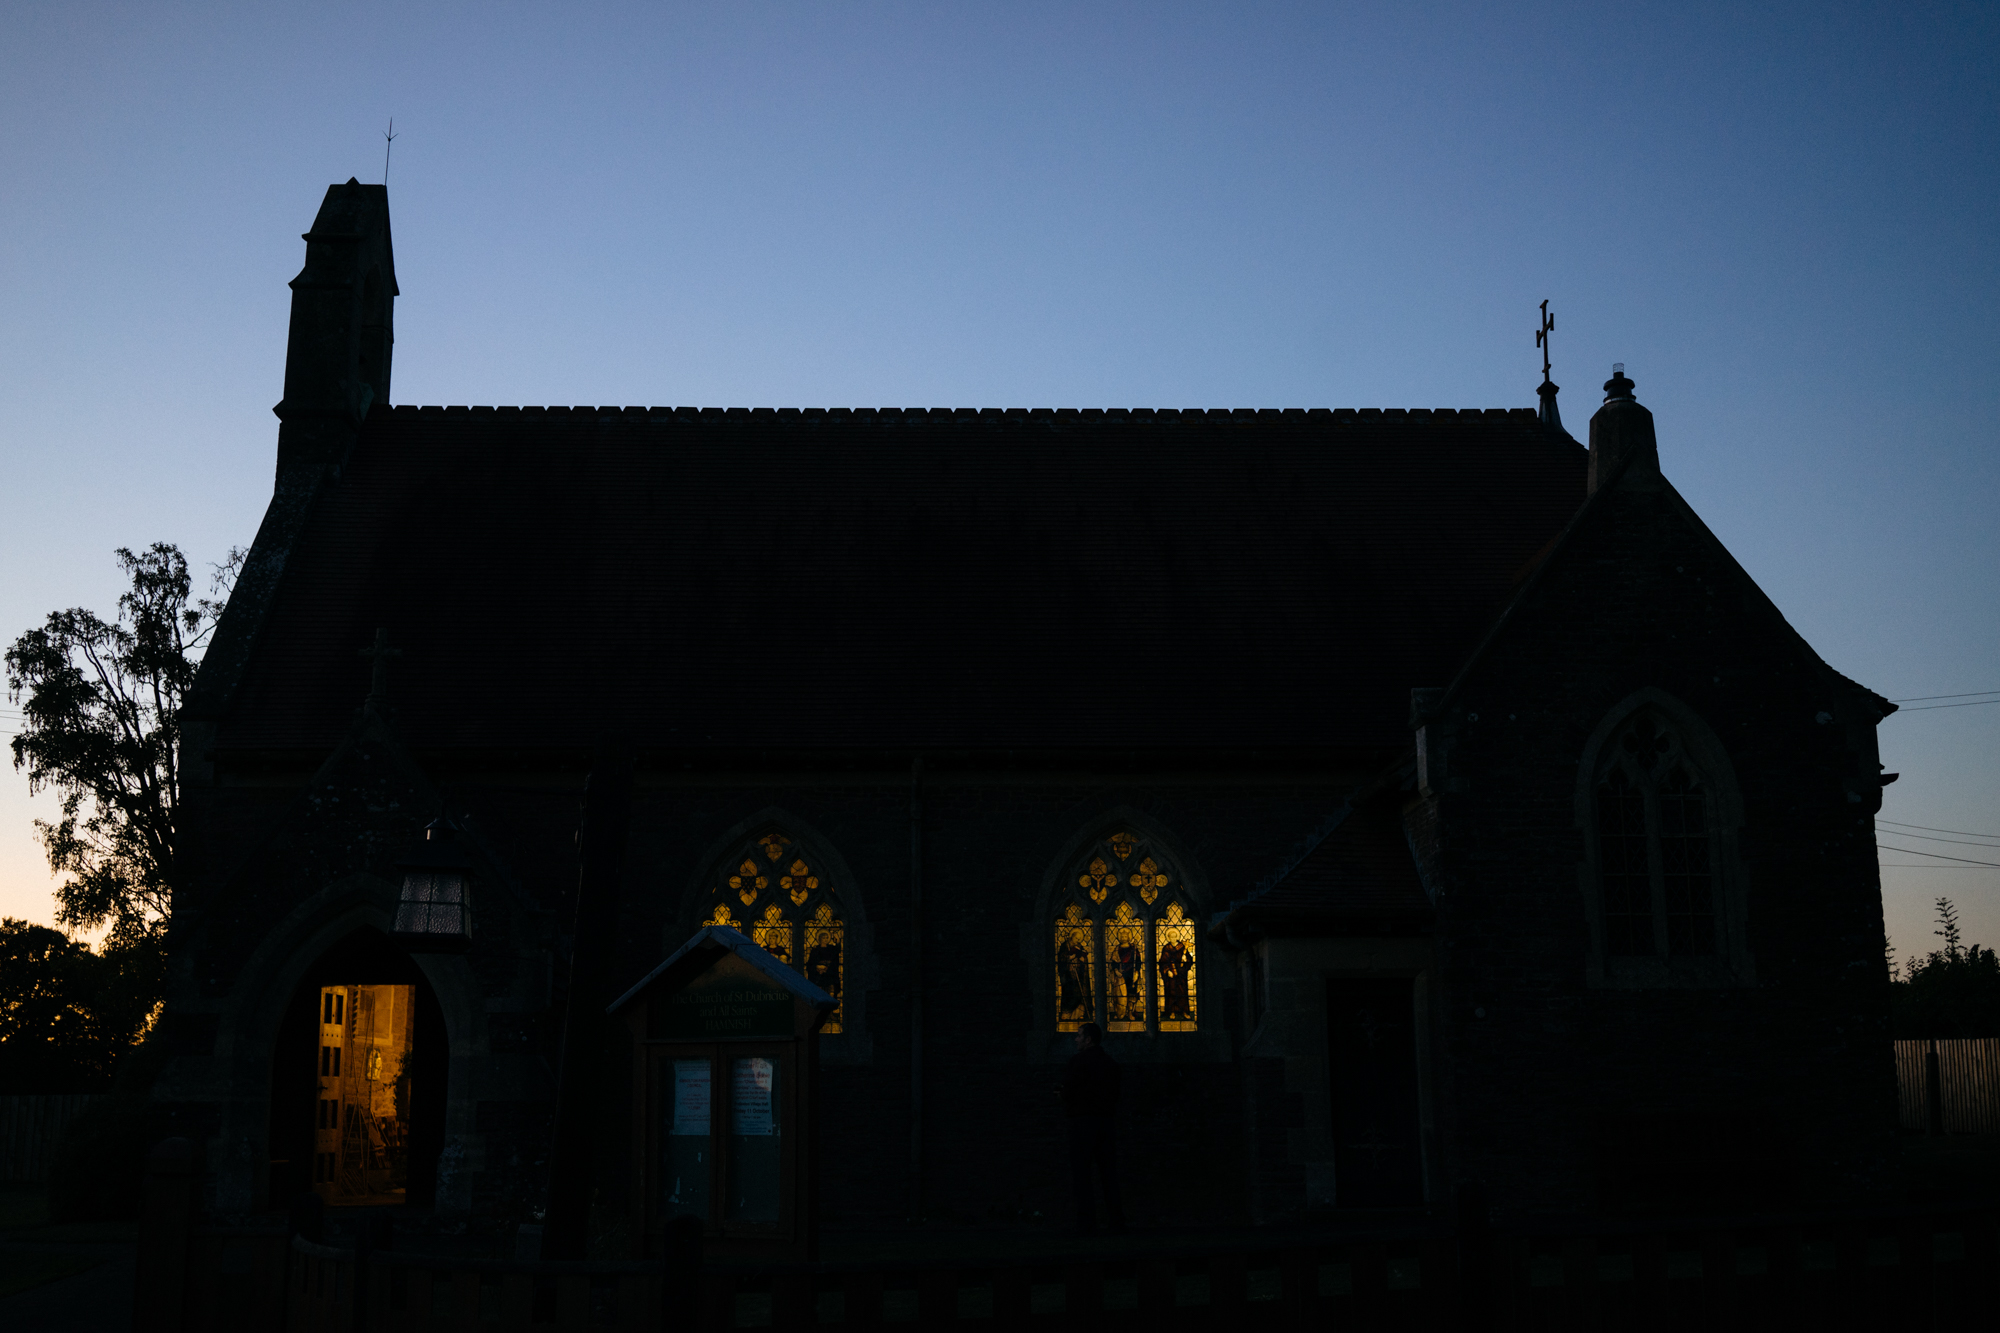 The Church at night